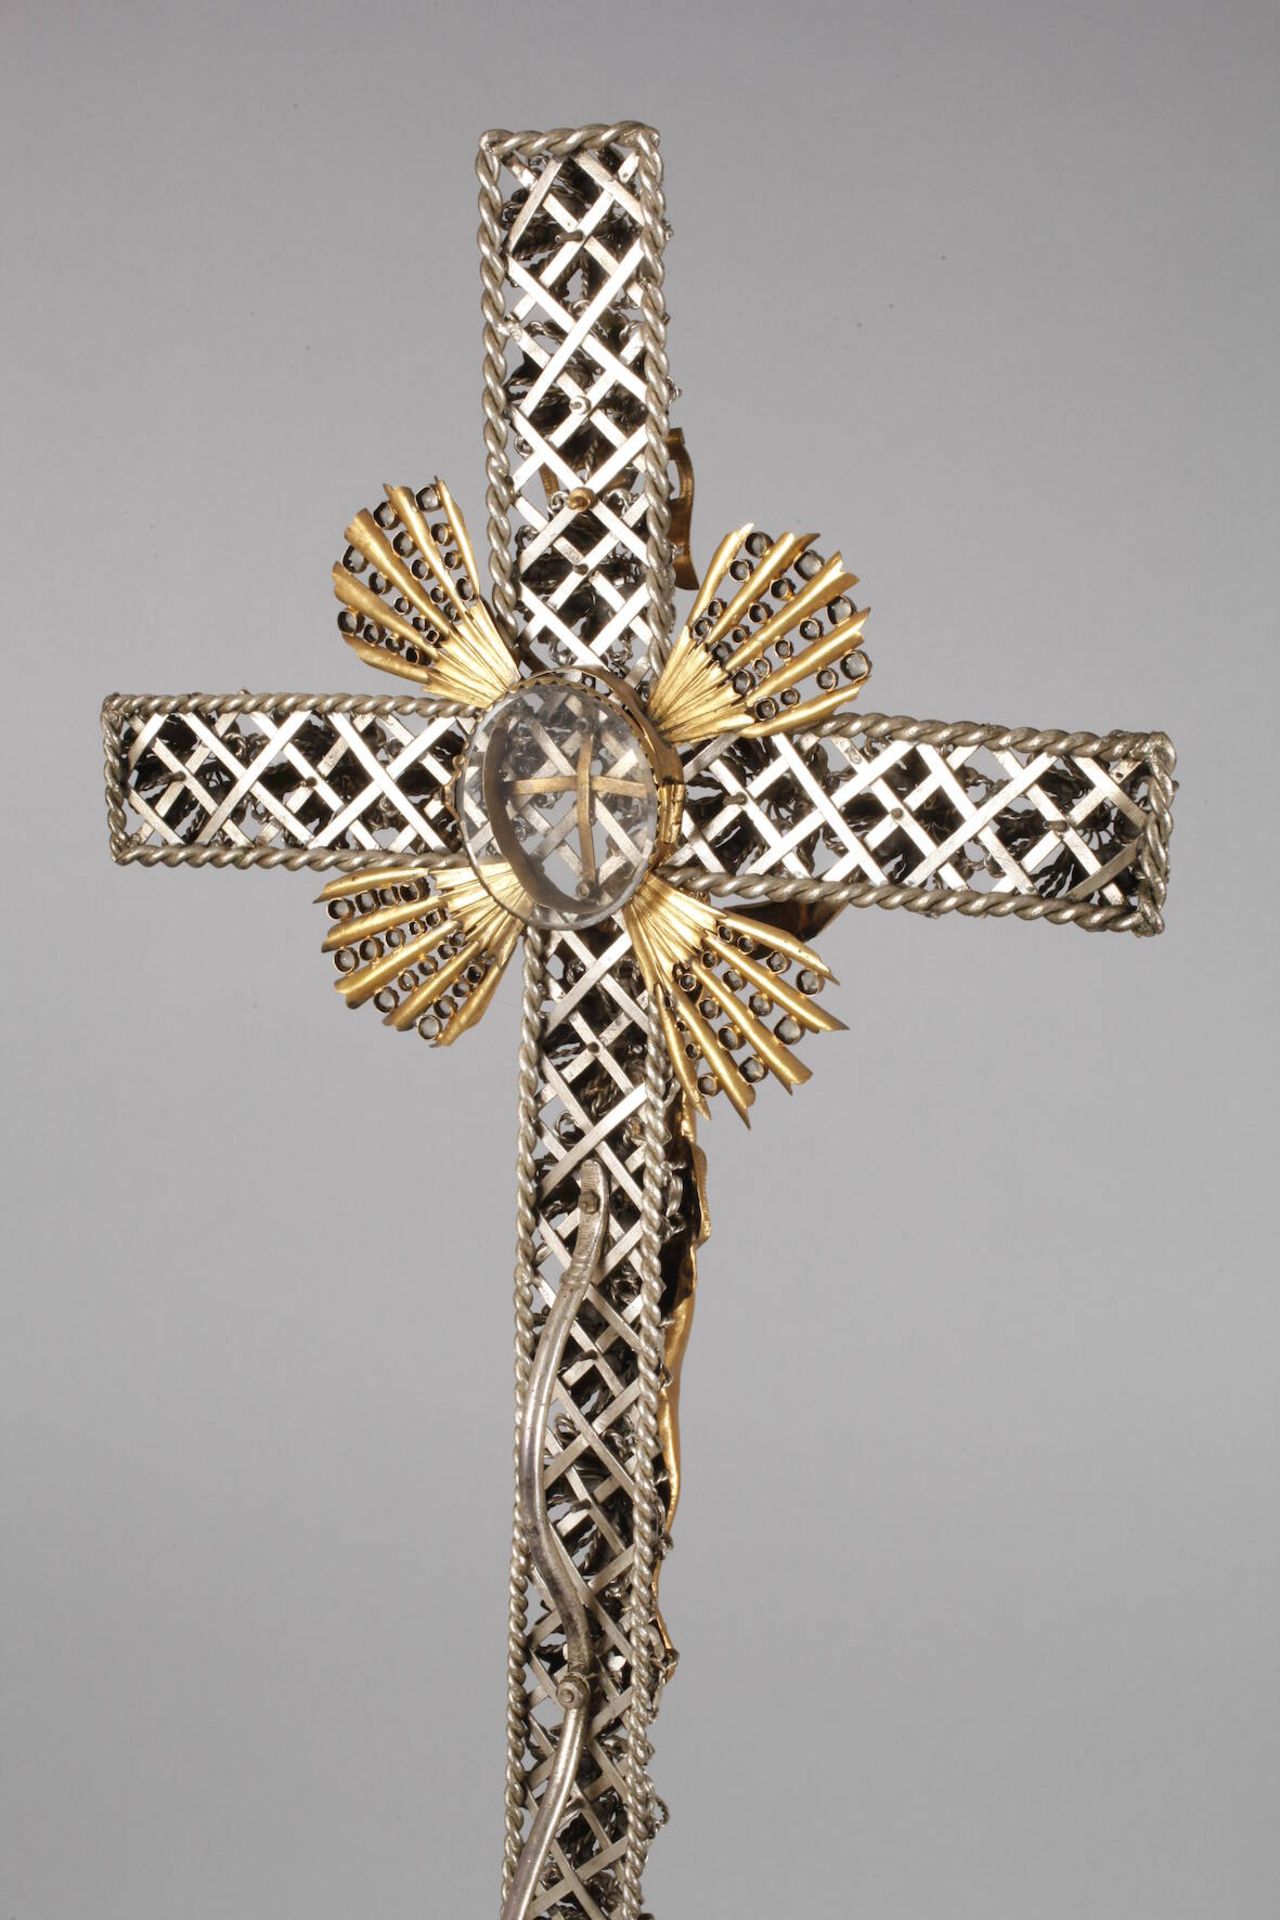 Großes Kruzifix Ende 19. Jh., Klosterarbeit, Messing und Weißmetall, Sockel und Kreuz durchbrochen - Bild 5 aus 7